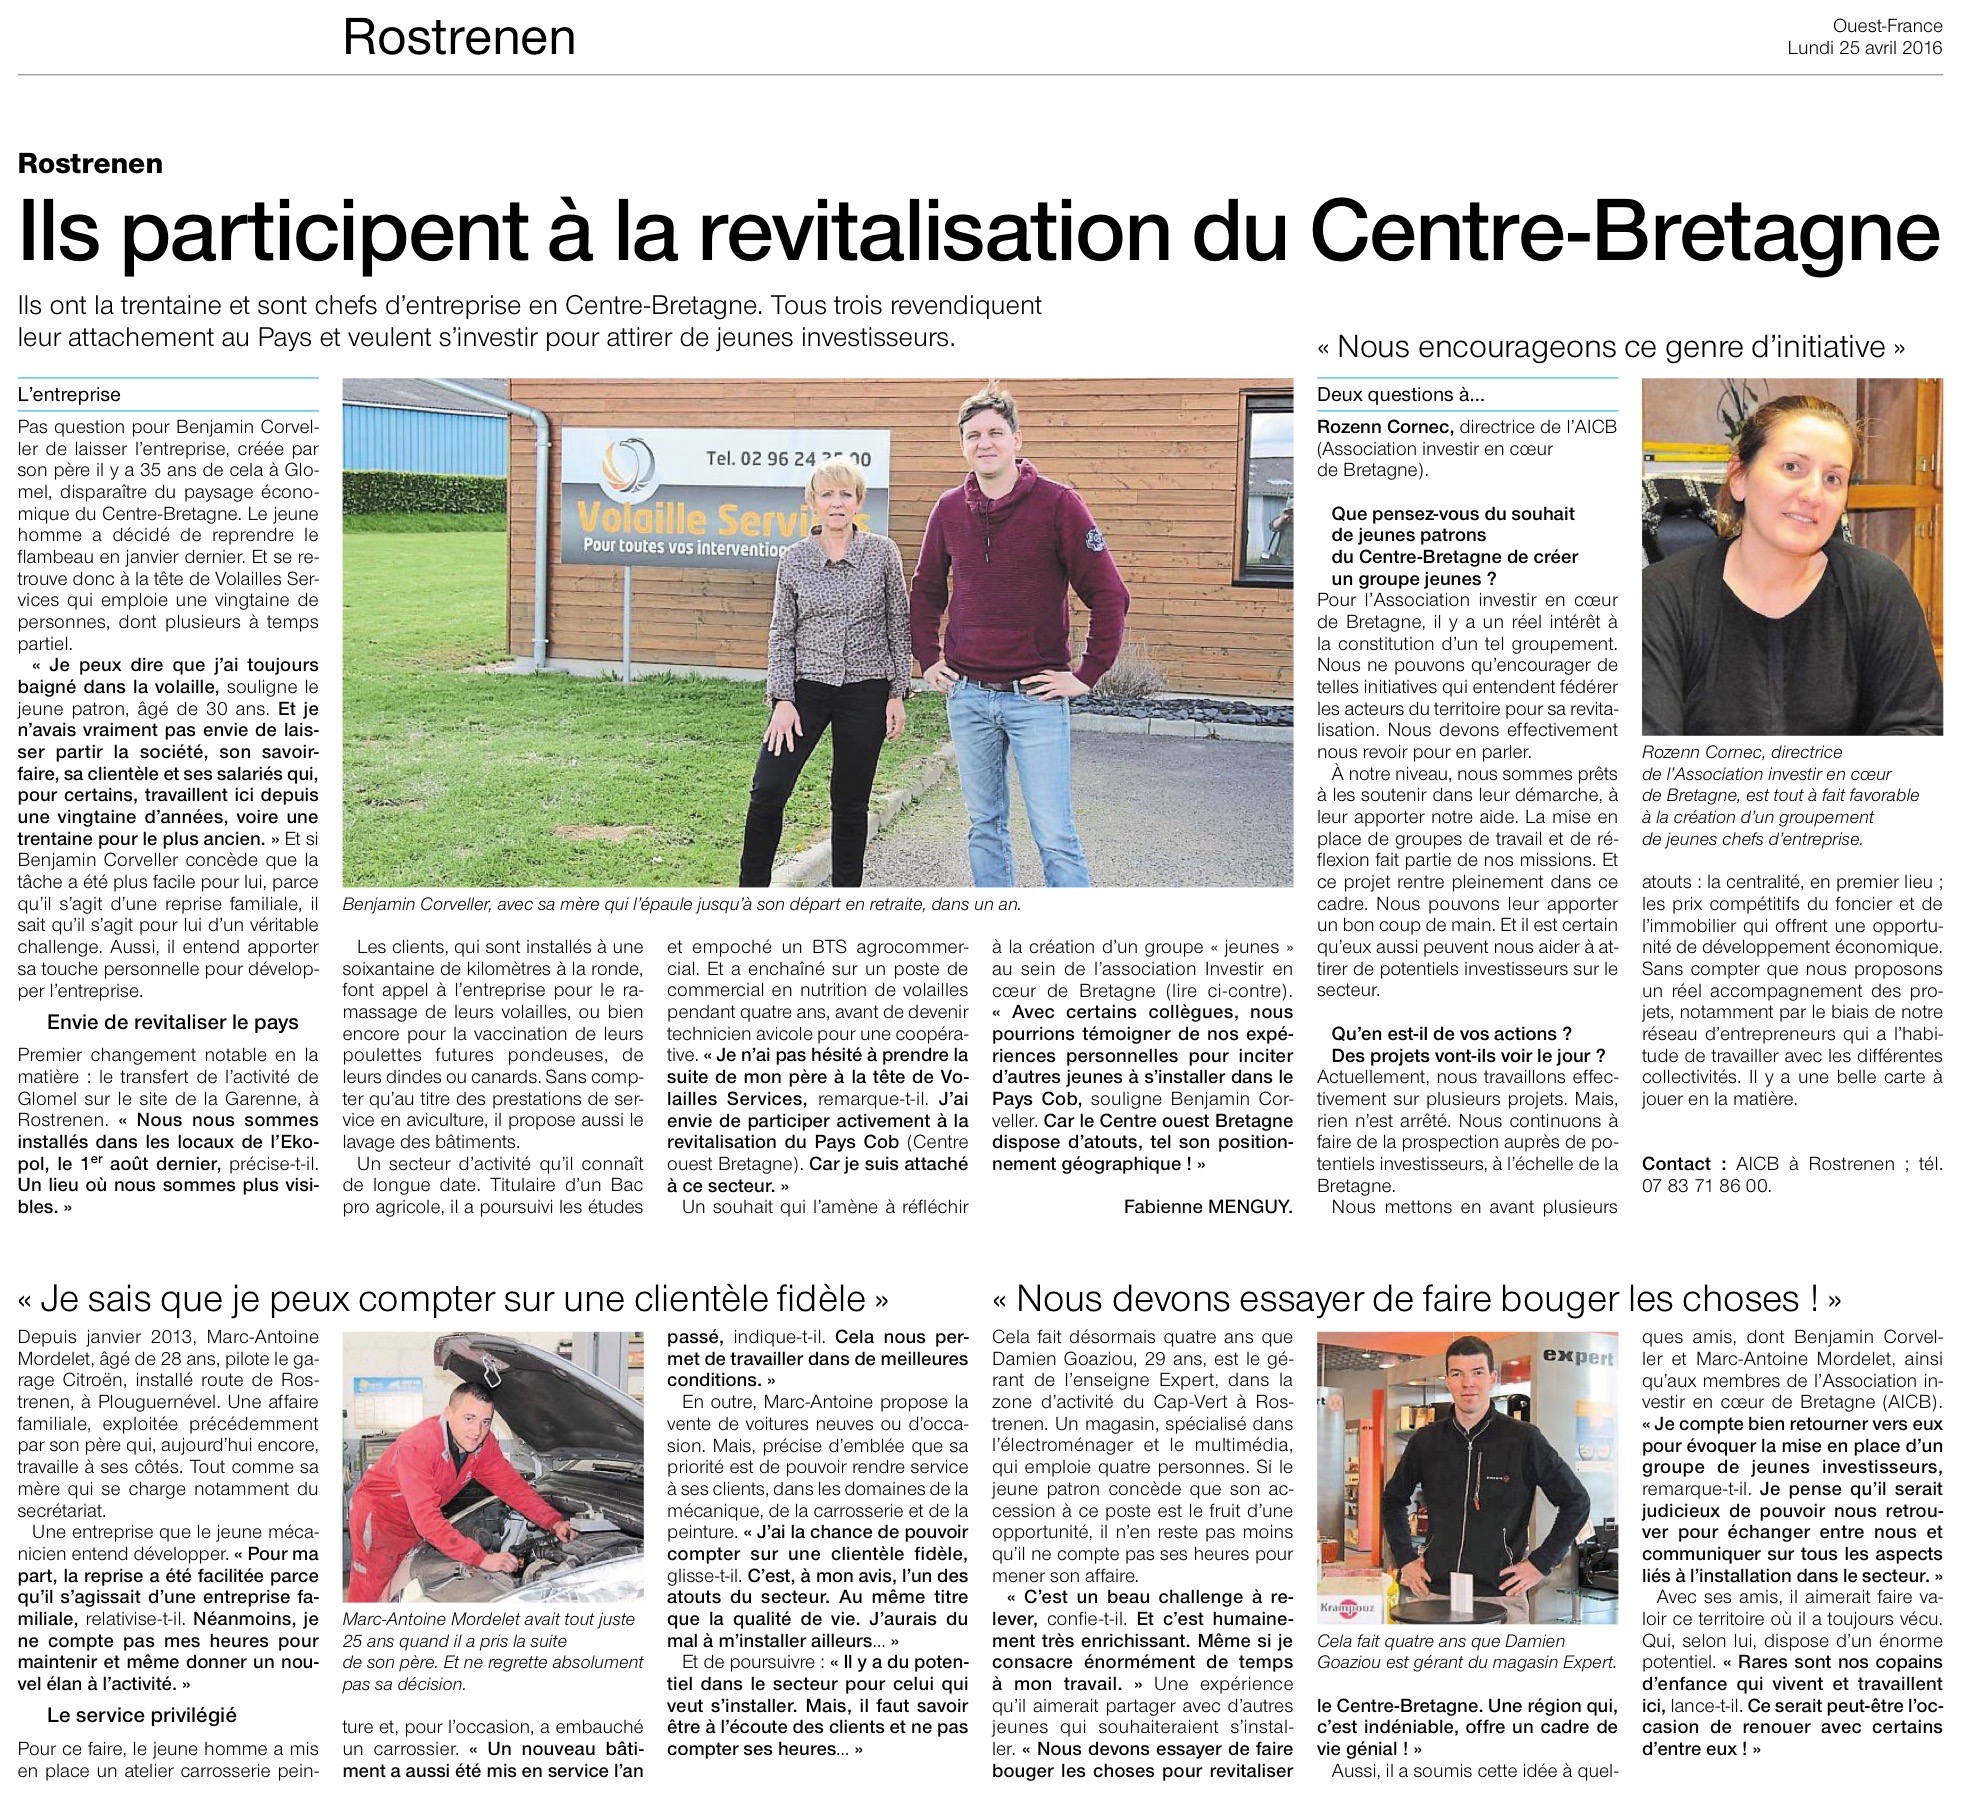 Communiqué de Presse - Rostrenen, ils participent à la revitalisation du centre-bretagne - Ouest France